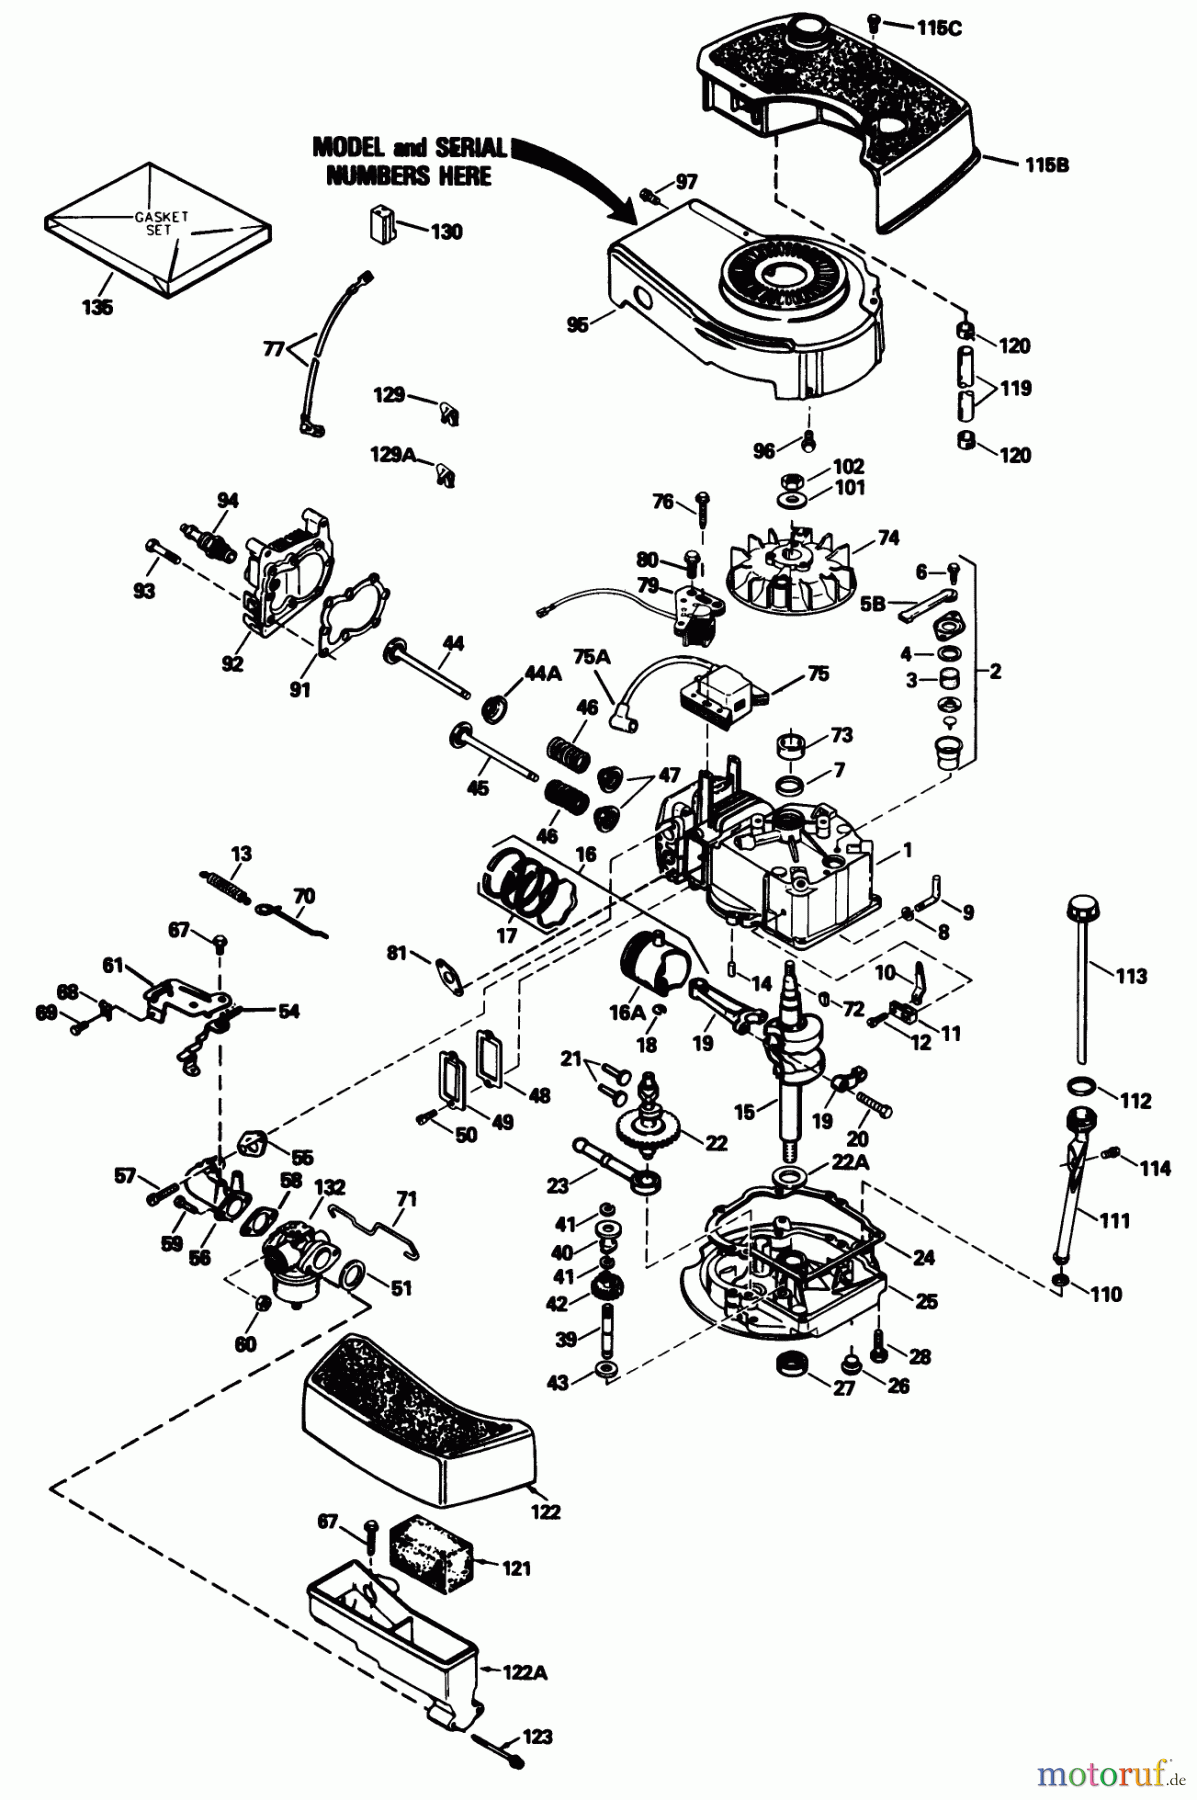  Toro Neu Mowers, Walk-Behind Seite 1 16793 - Toro Lawnmower, 1989 (9000001-9999999) ENGINE TECUMSEH MODEL NO. TNT 100-10104F